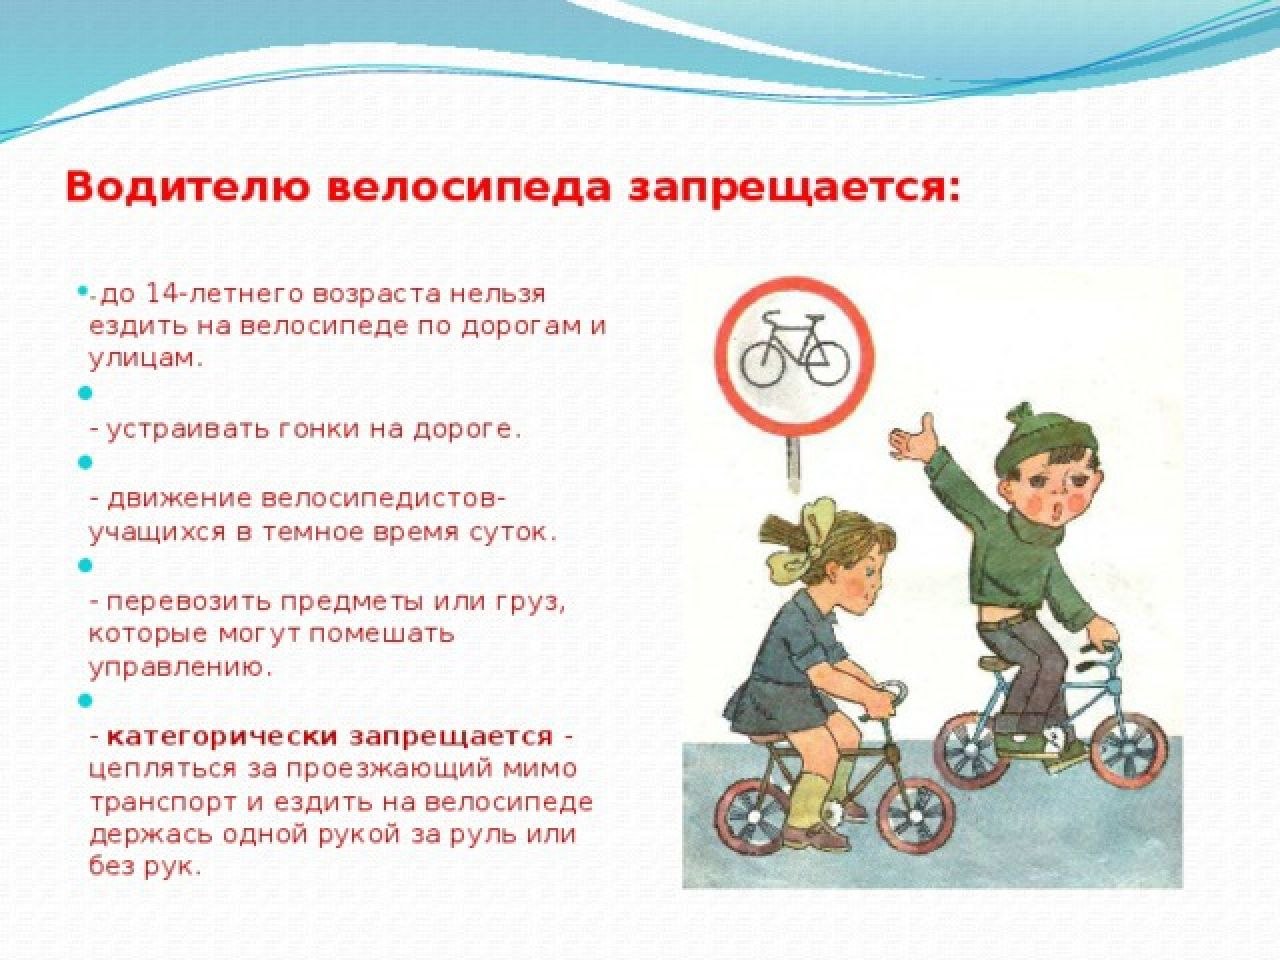 Можно ли кататься на велосипеде после. Что запрещается водителю велосипеда. Памятка водителям велосипеда запрещается. Что запрещается делать велосипедисту. Велосипедисту запрещается ездить по.